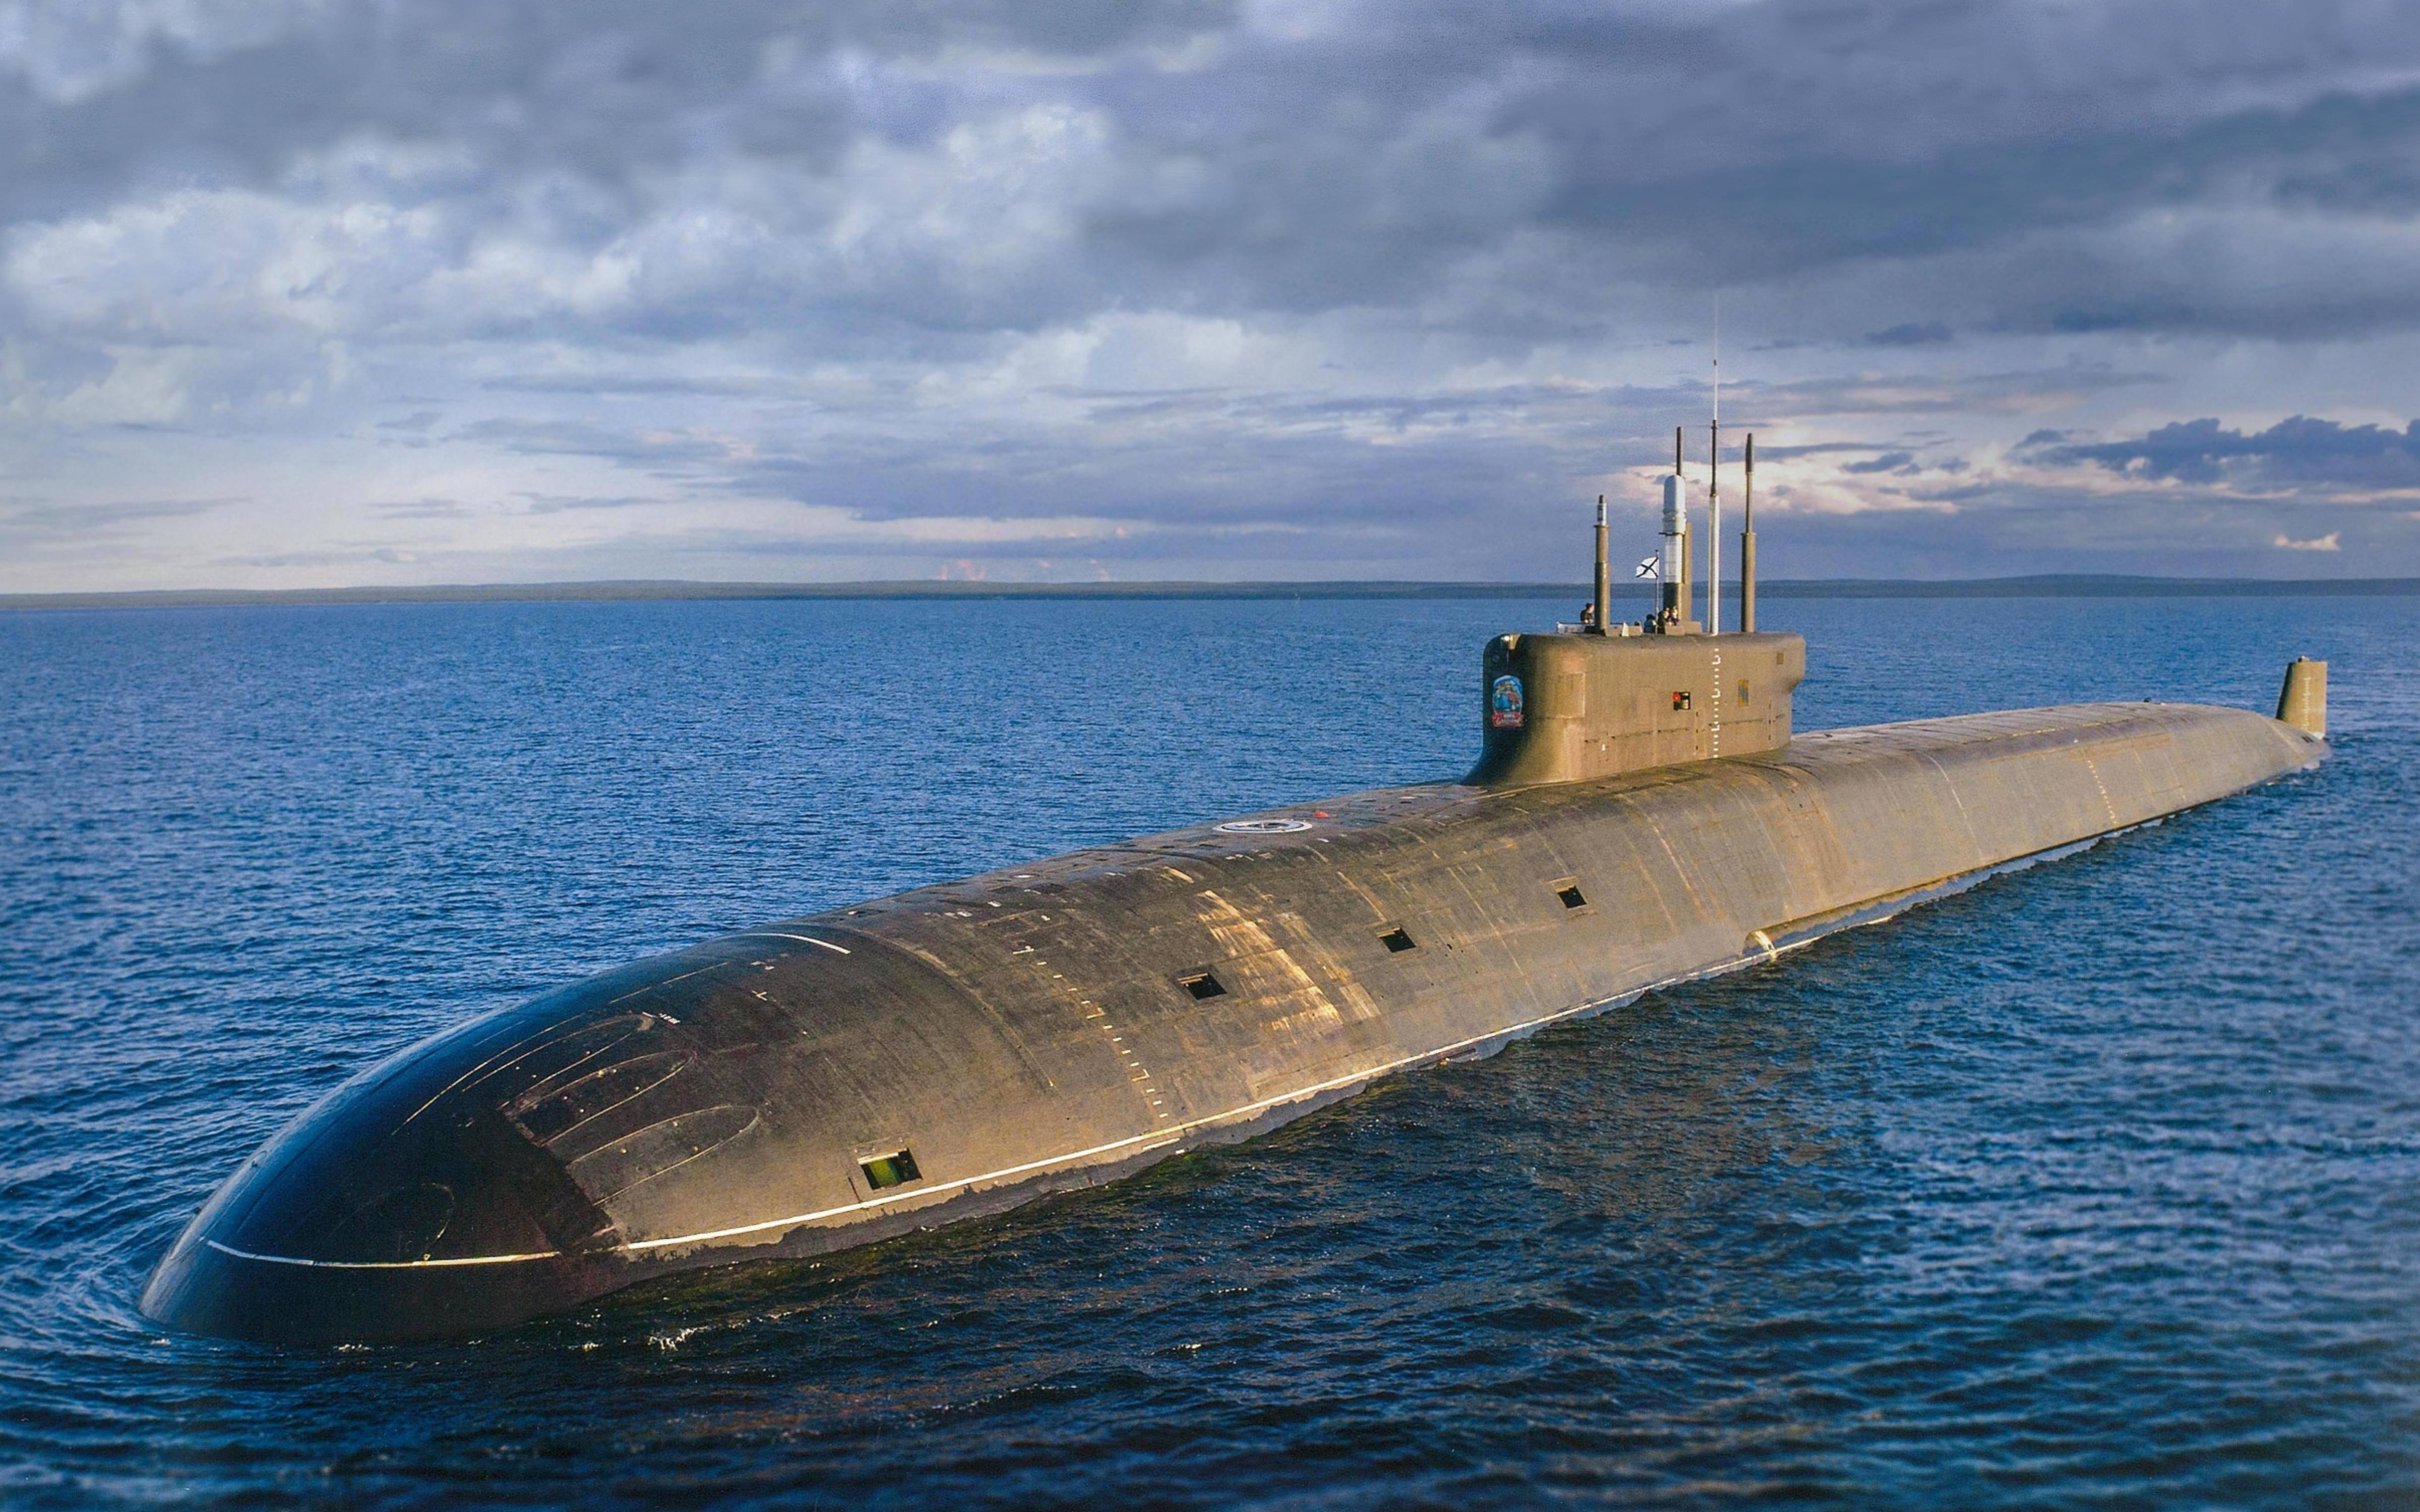 Пл ка. Подводные лодки проекта 955 «Борей» (955а «Борей-а»). К-329 Белгород атомная подводная лодка.